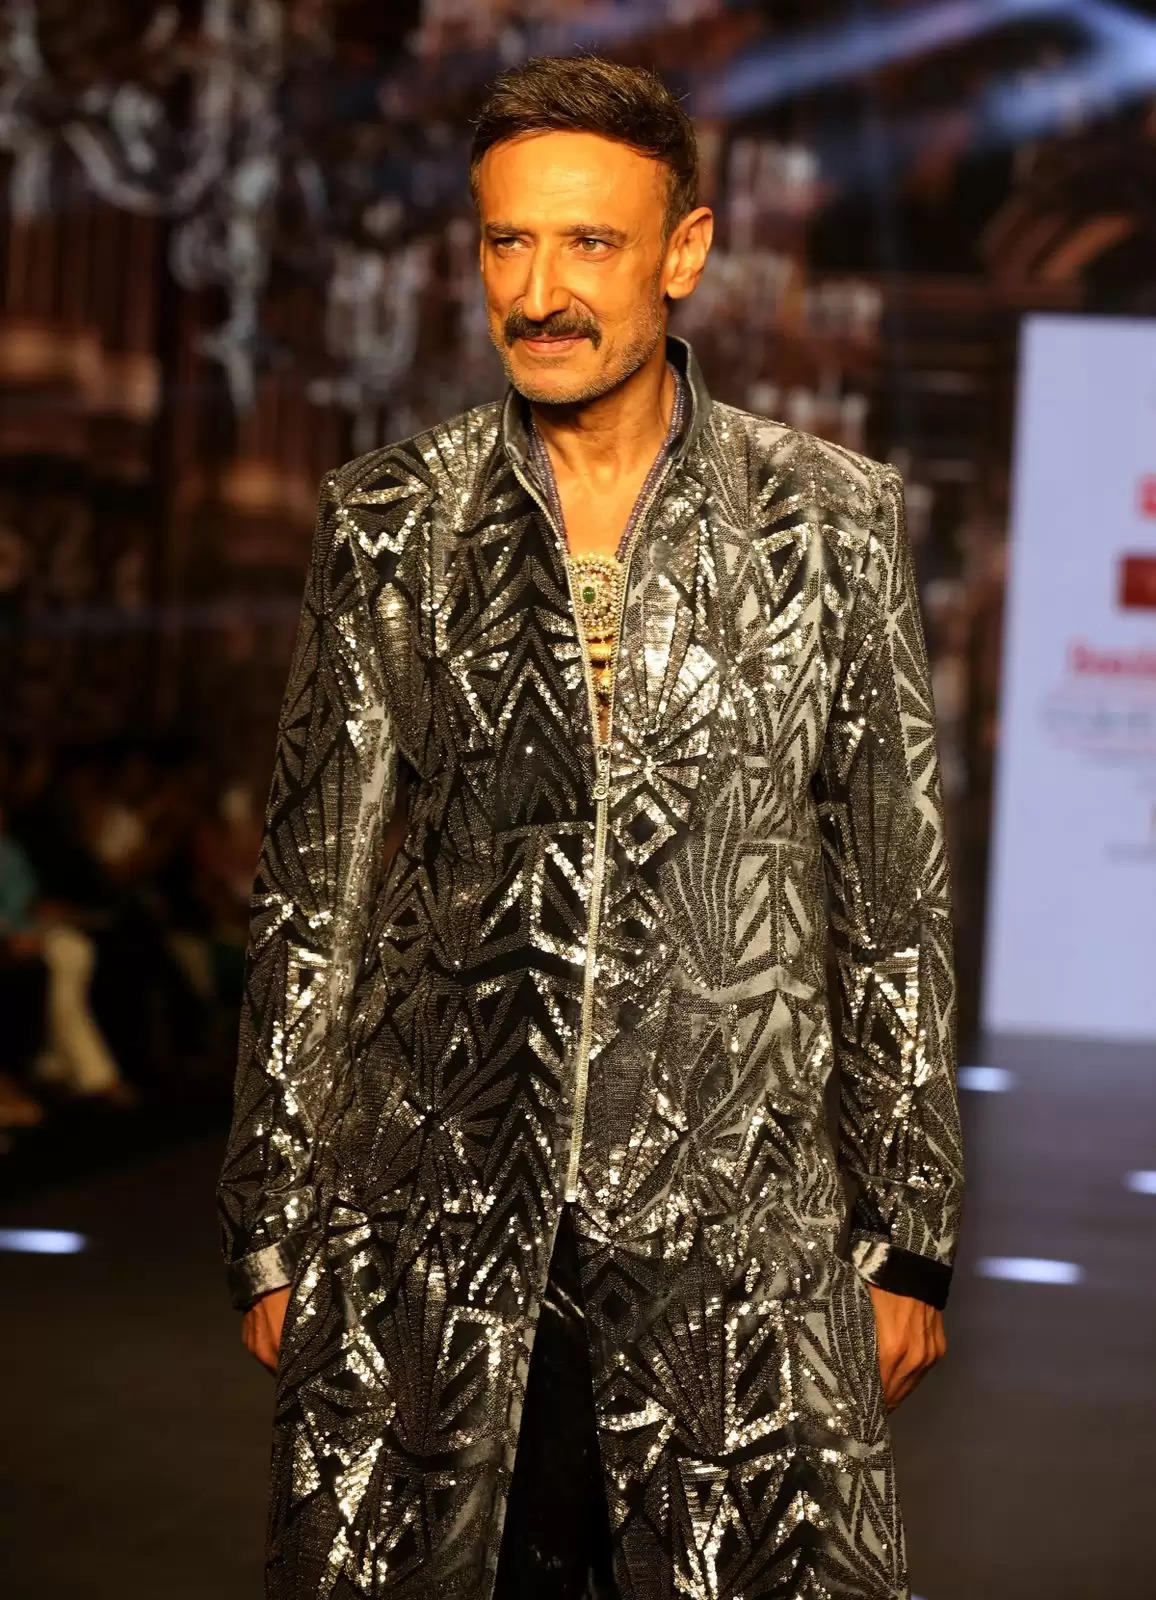 राहुल देव बॉम्बे टाइम्स फैशन वीक में रैंप पर चलते हुए, वह बेहद आकर्षक और हैंडसम लग रहे थे